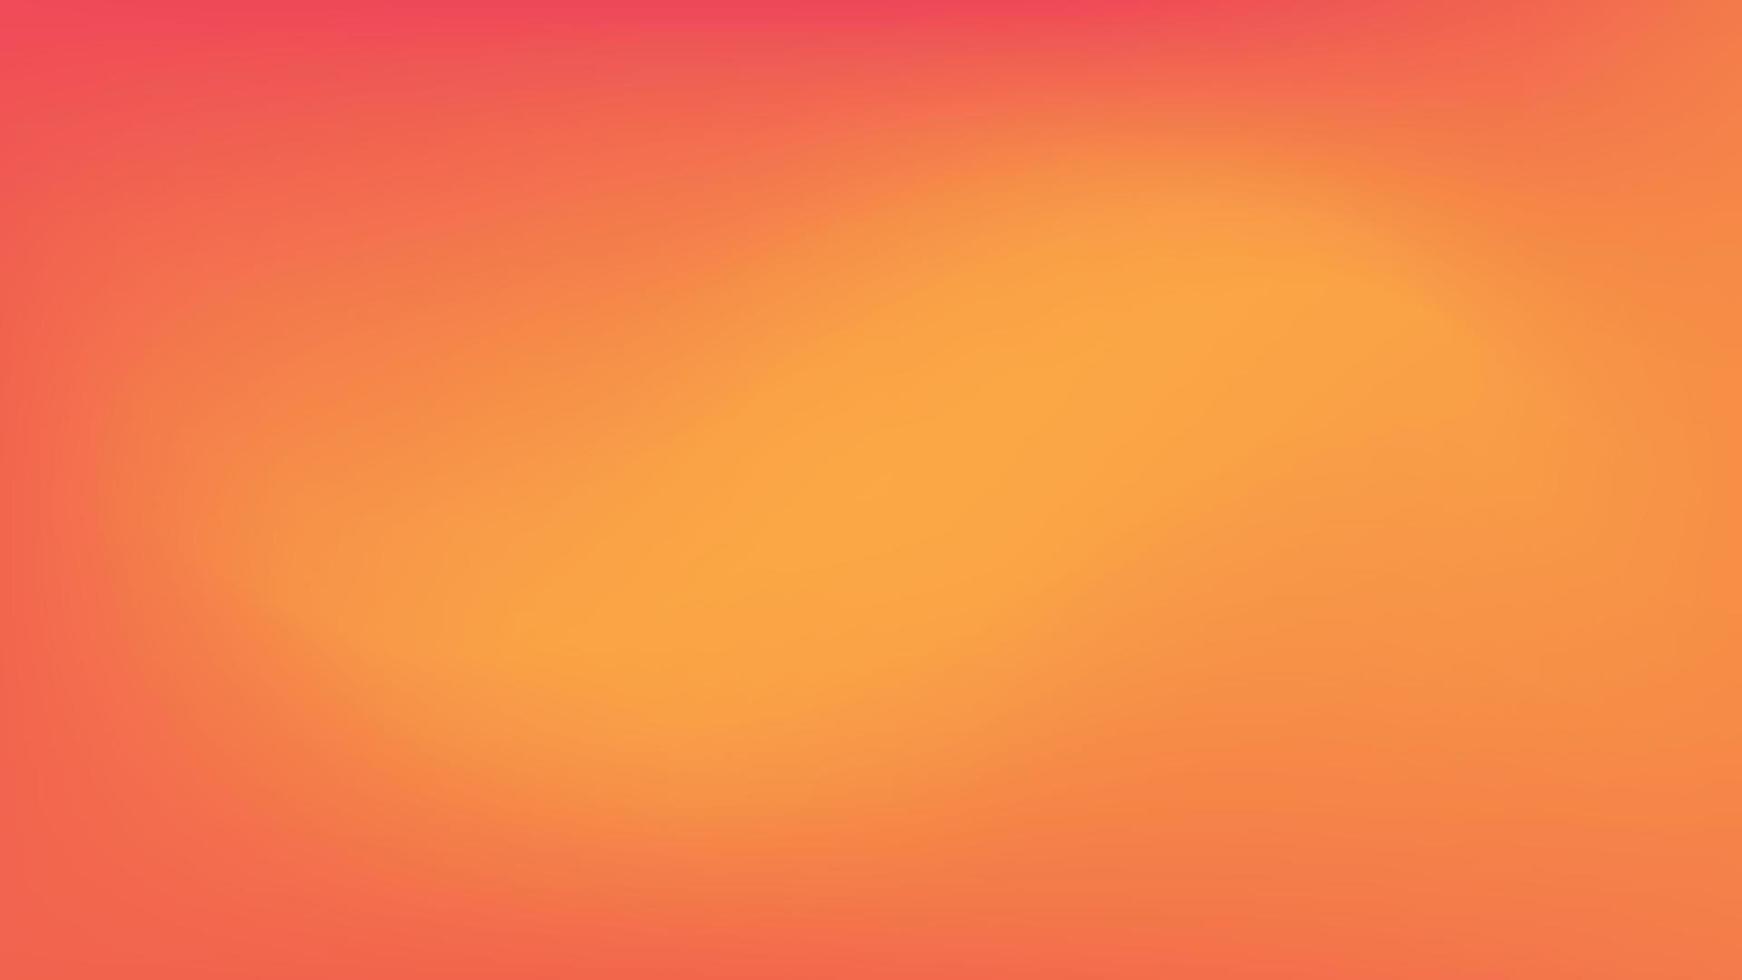 sfondo astratto sfumato. liscio morbido e caldo brillante liquido rosso, giallo, arancione sfumato per app, web design, pagine web, banner, biglietti di auguri. disegno di illustrazione vettoriale